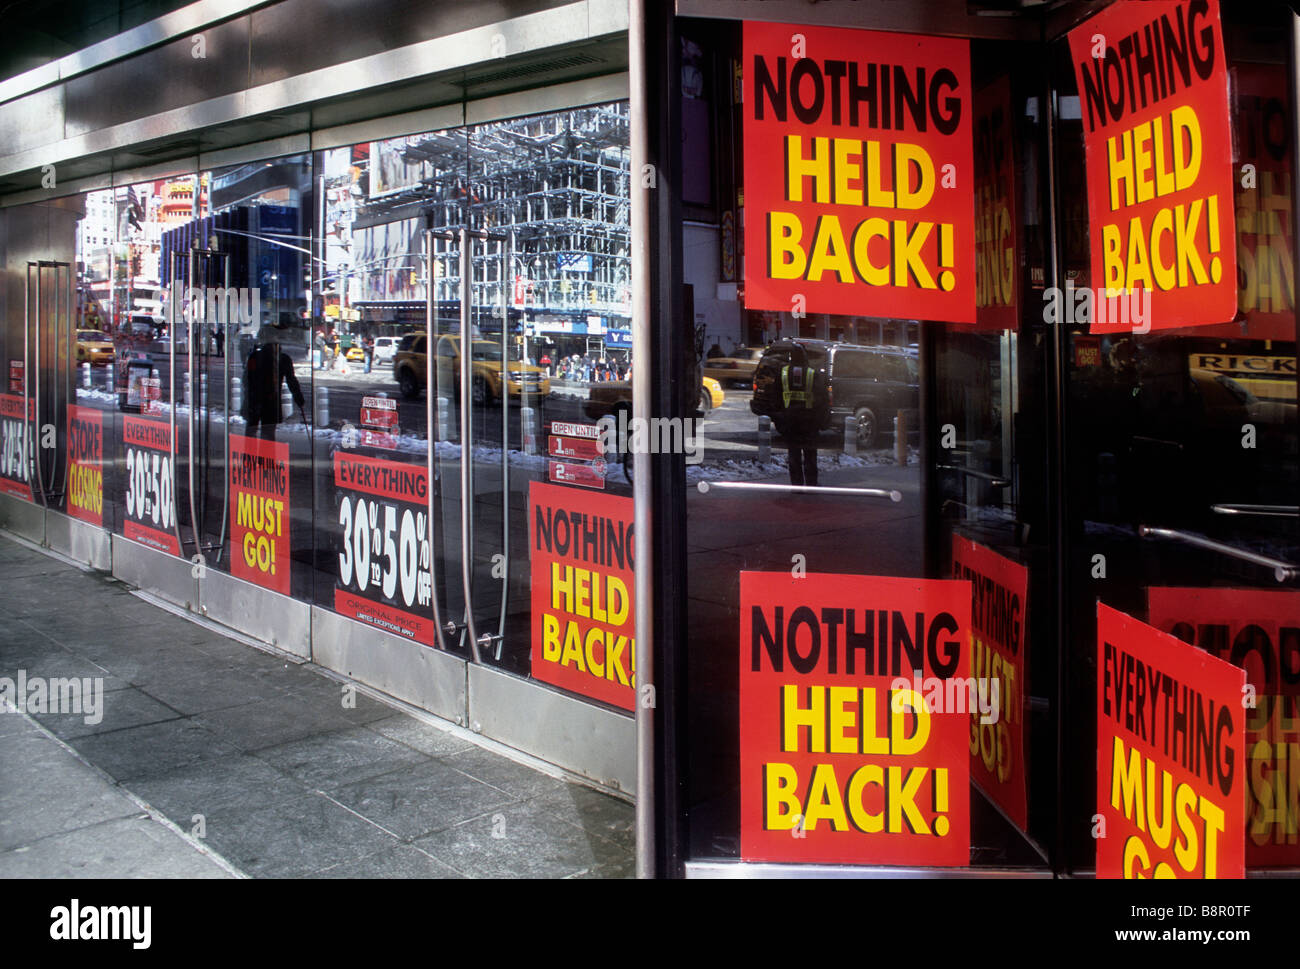 États-Unis New York City Broadway et Times Square ne sont plus en activité. Les magasins ferment les affiches de fenêtre. Crise économique crise financière. Magasins vacants. Banque D'Images